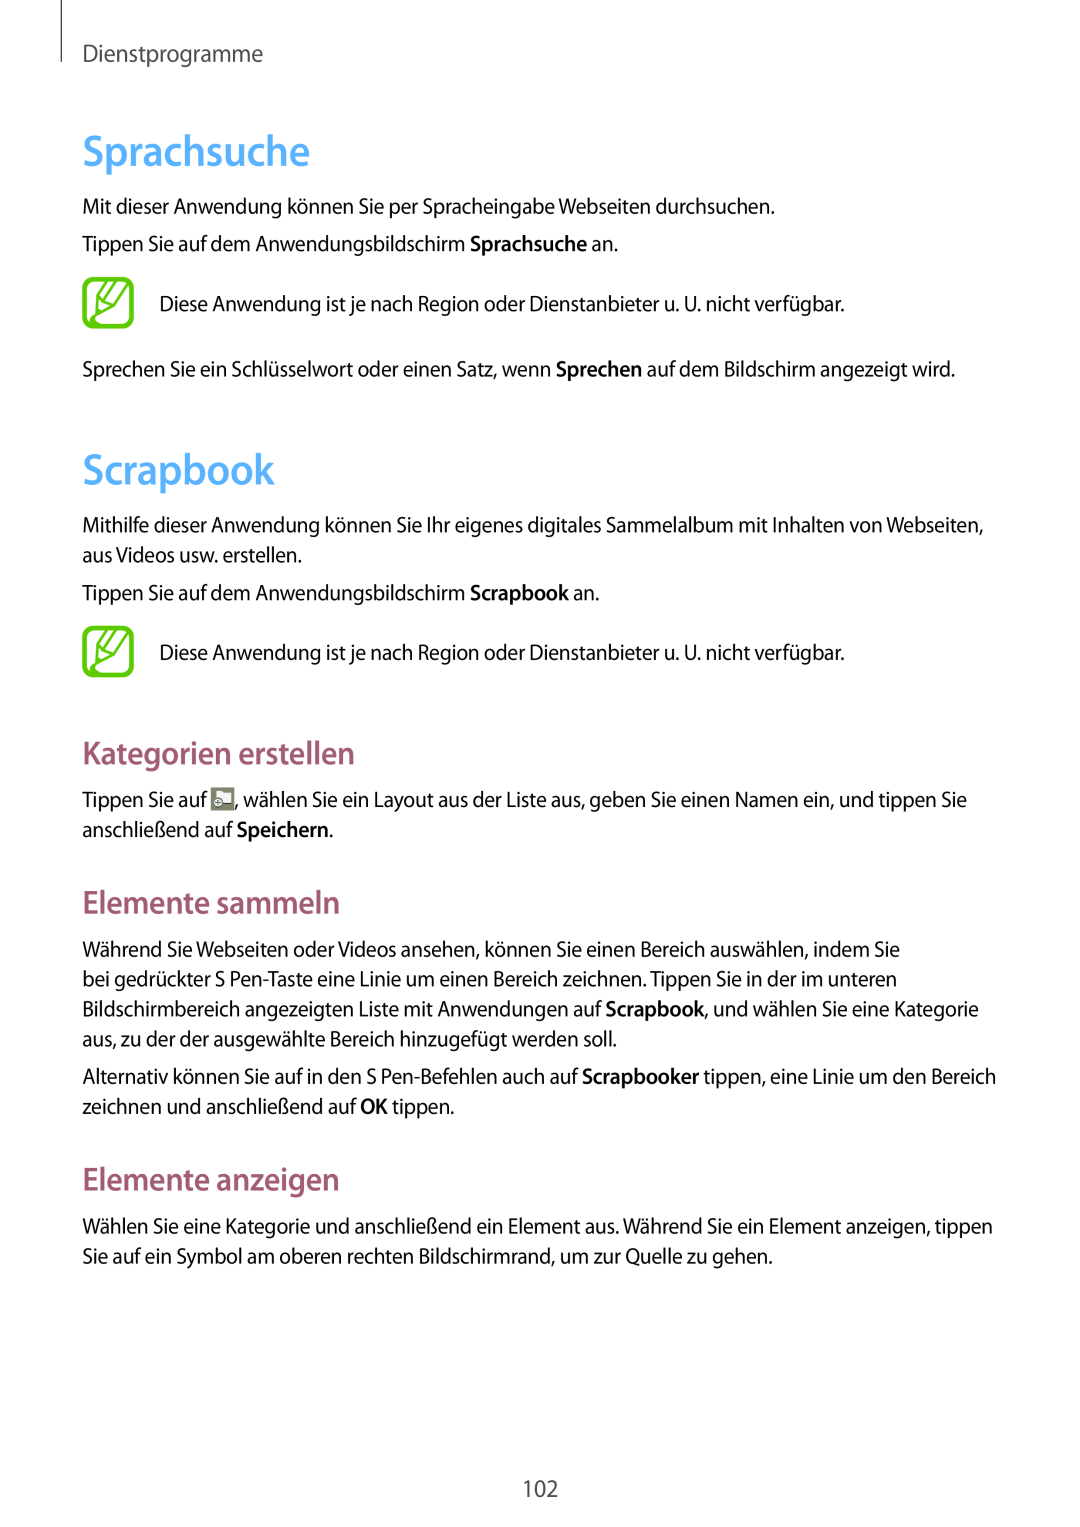 Samsung SM-P6000ZWAEUR Sprachsuche, Scrapbook, Kategorien erstellen, Elemente sammeln, Elemente anzeigen, Dienstprogramme 